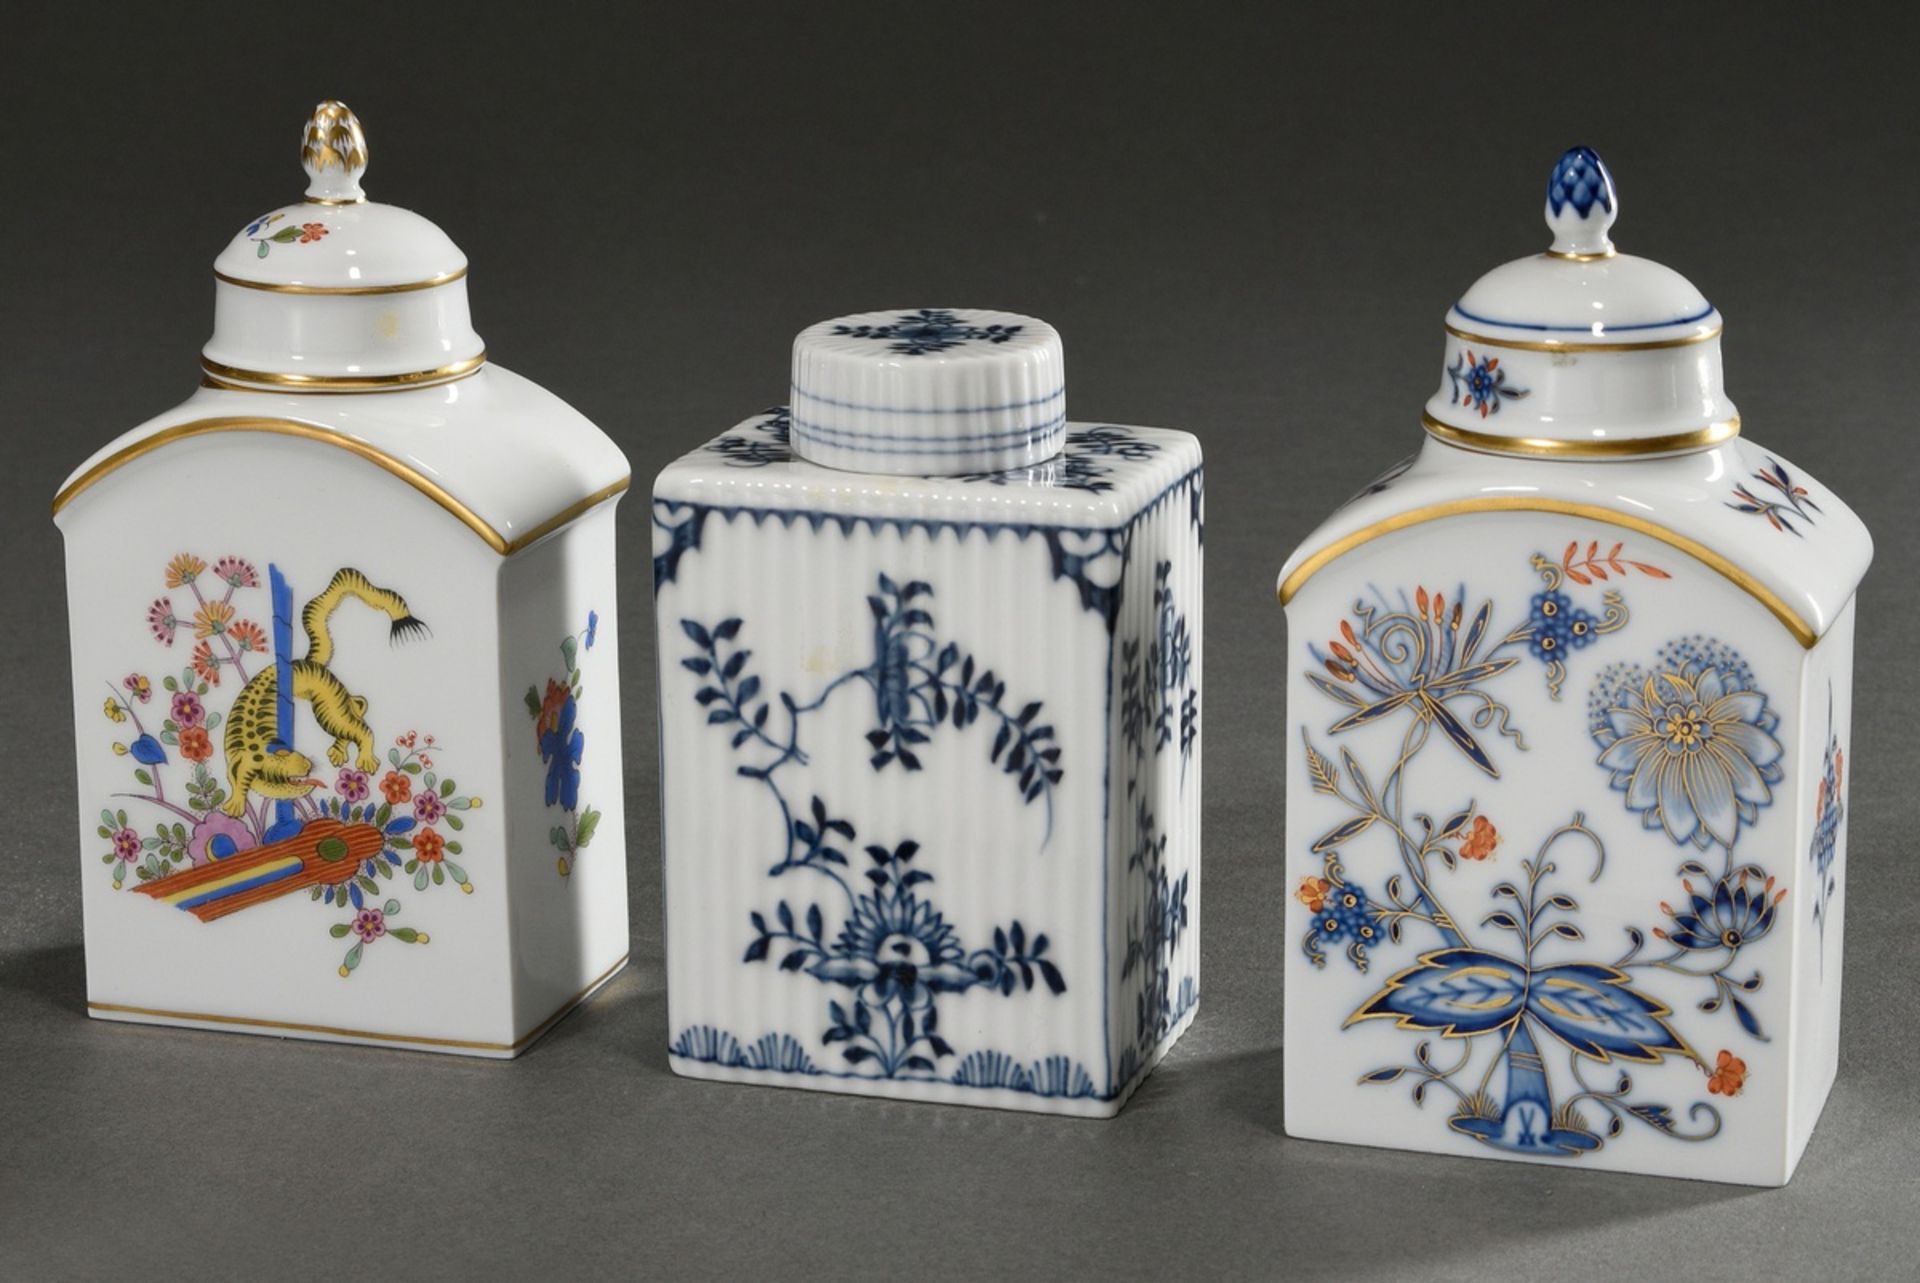 3 Diverse Meissen Teedosen in unterschiedlichen Dekoren: 1x "Strohblumenmuster" in Blaumalerei auf 